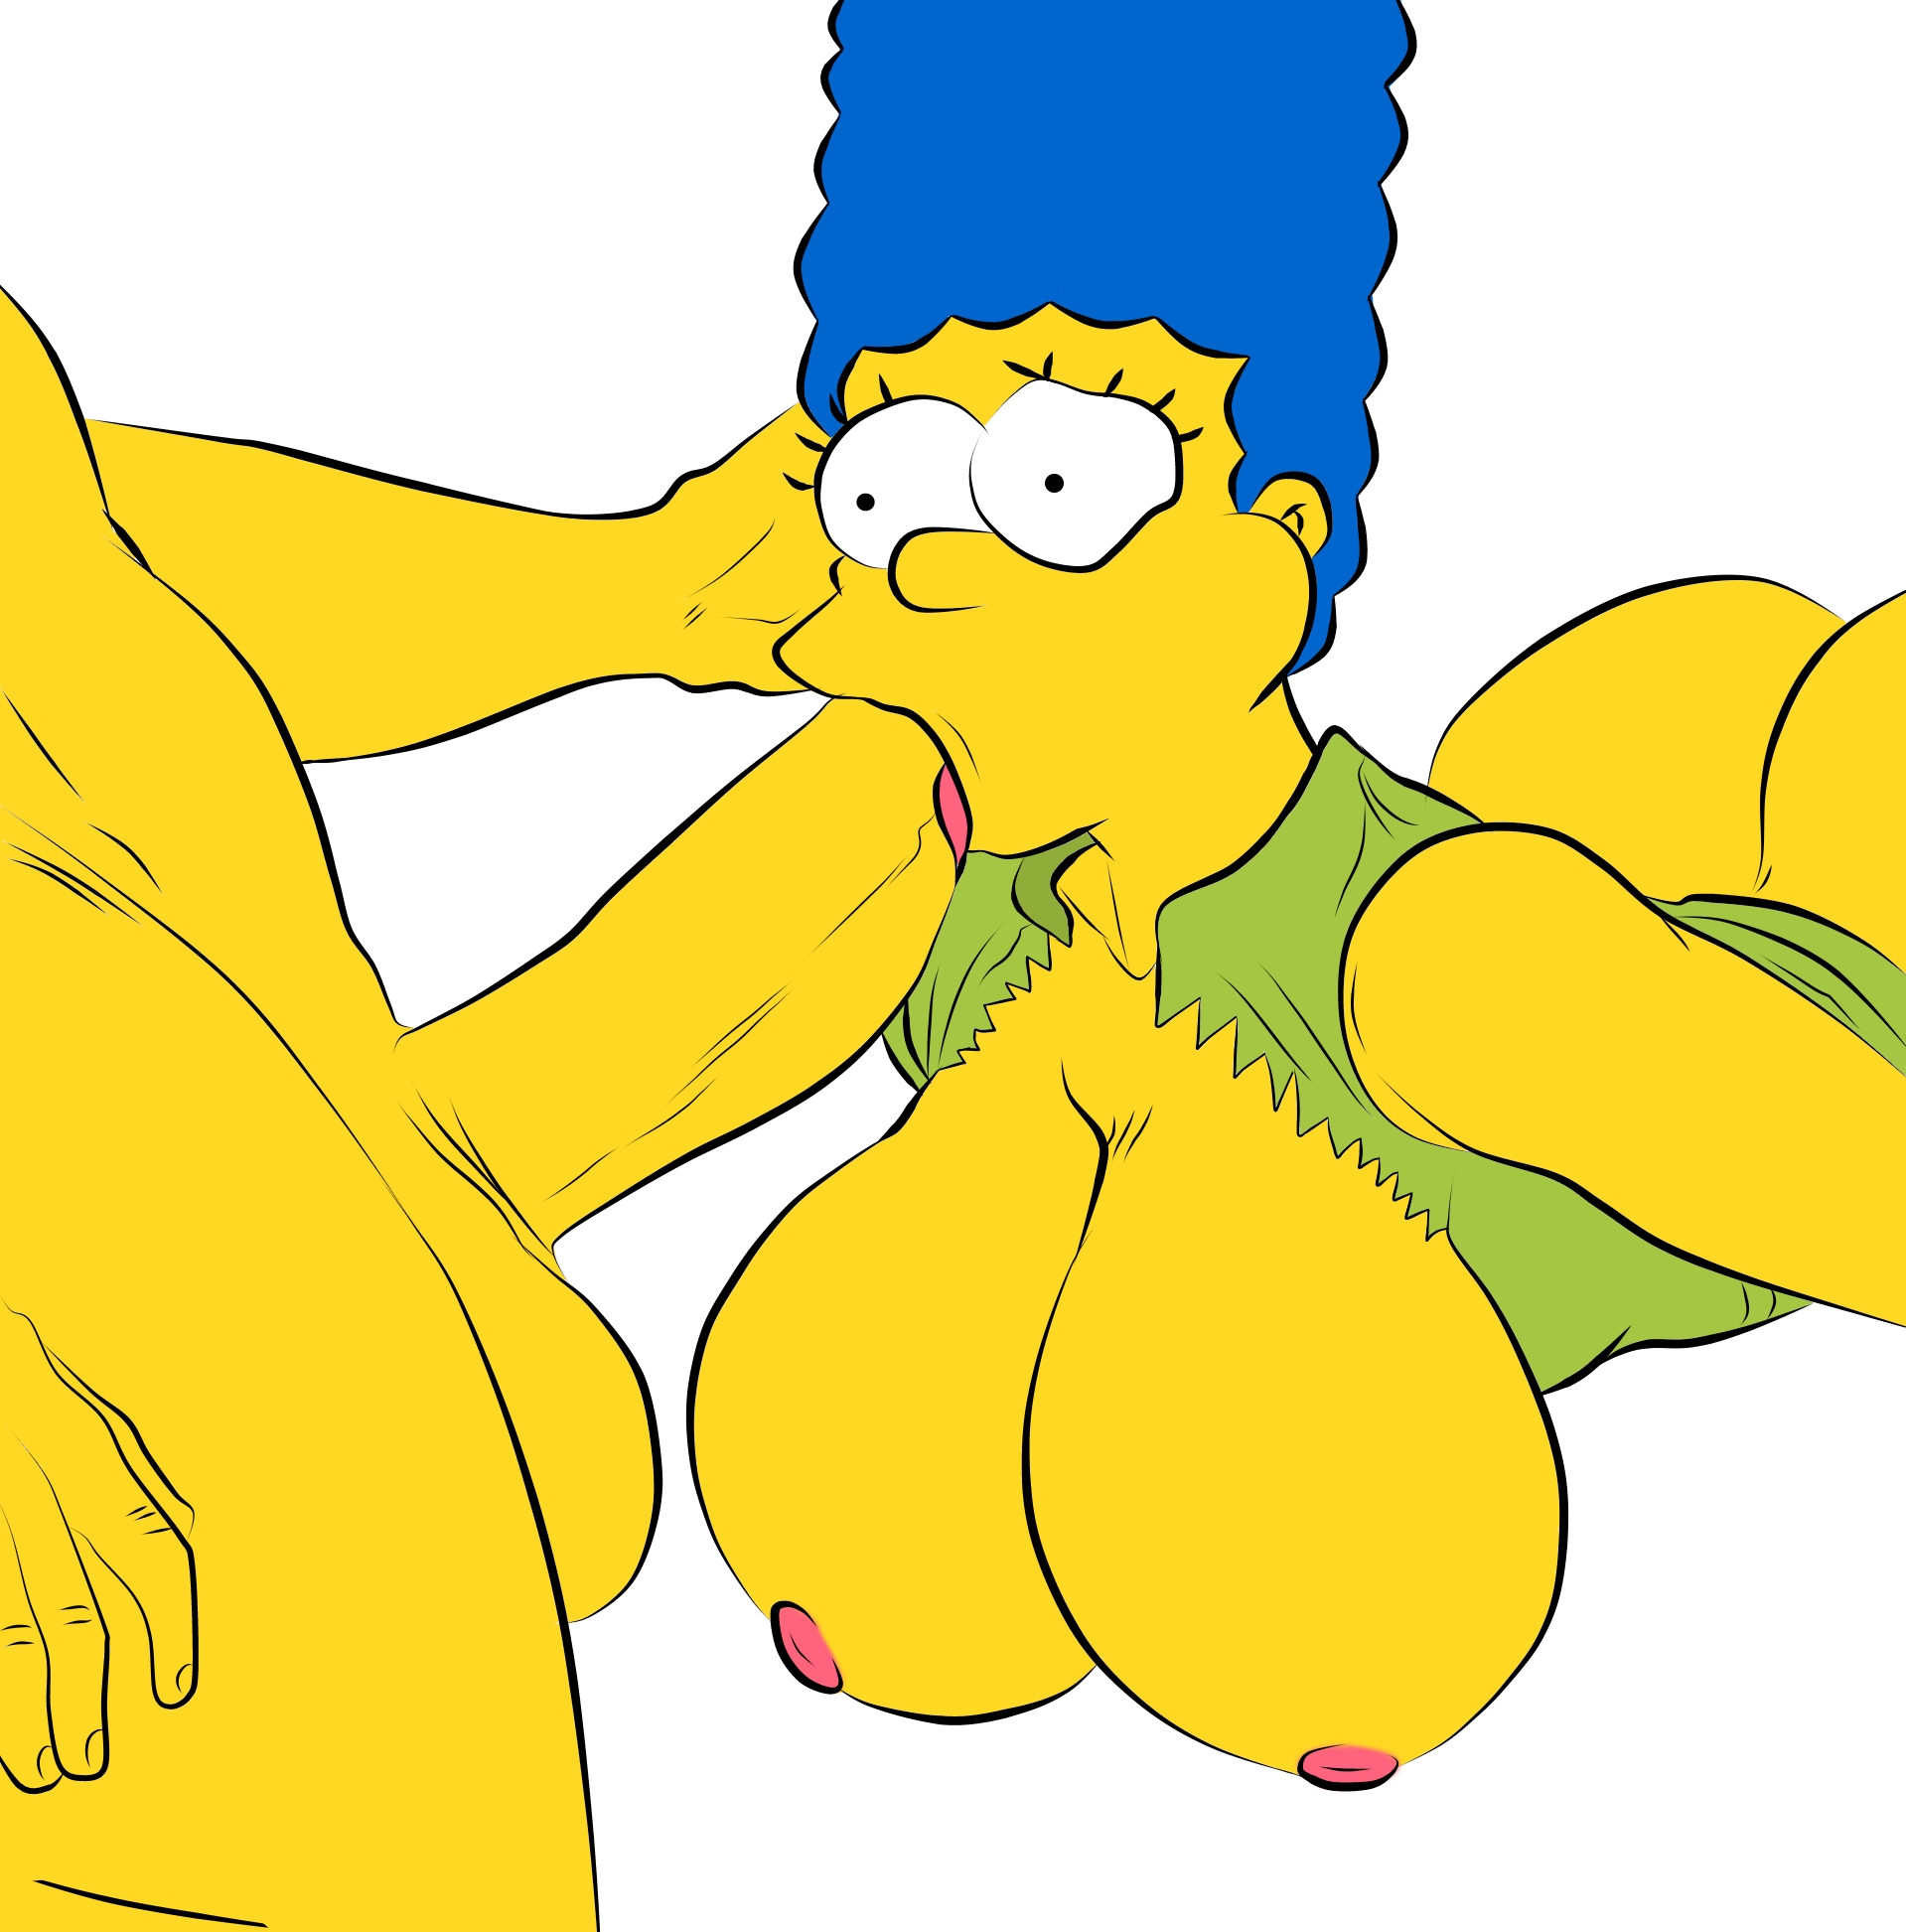 Marge simpsons rule 34